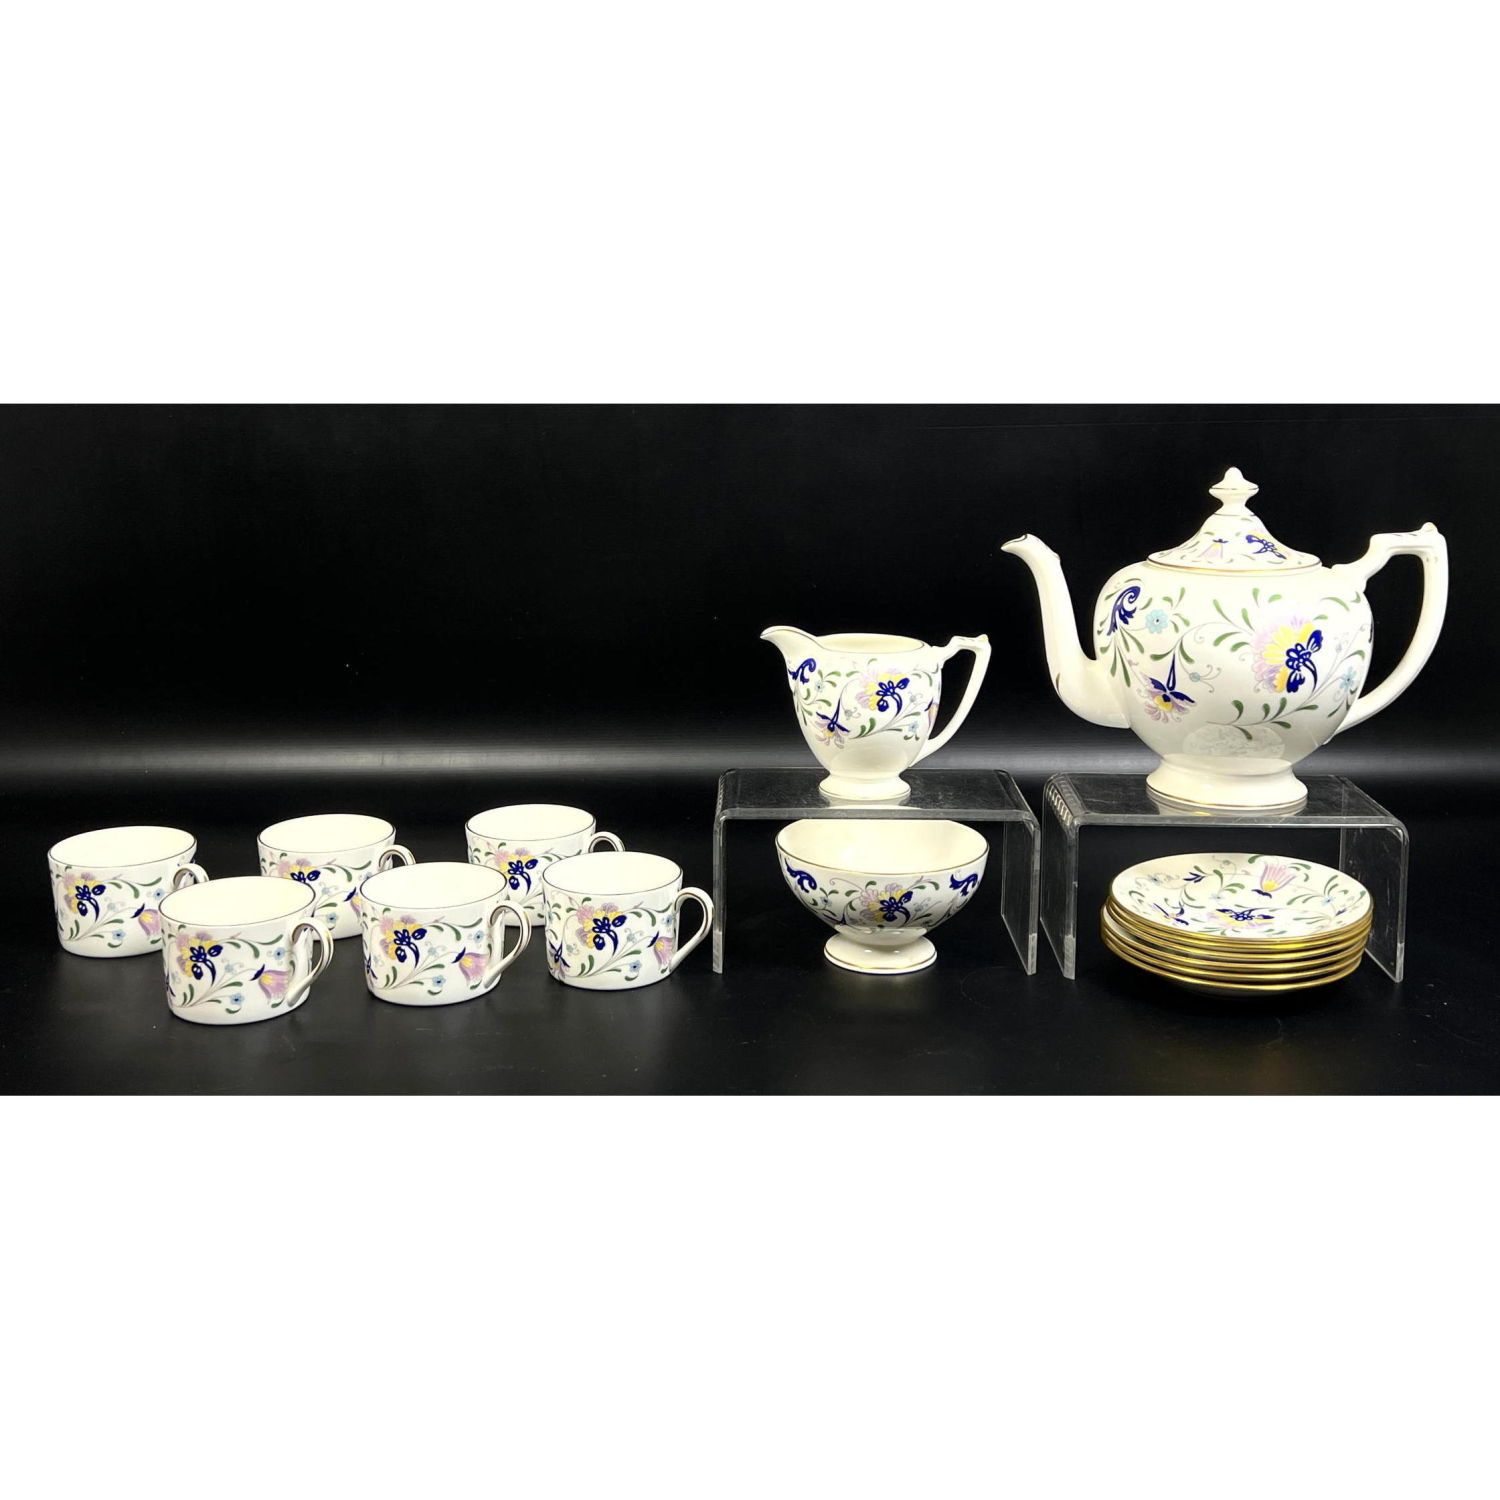 15pc Coalport Tea Set Serves 6